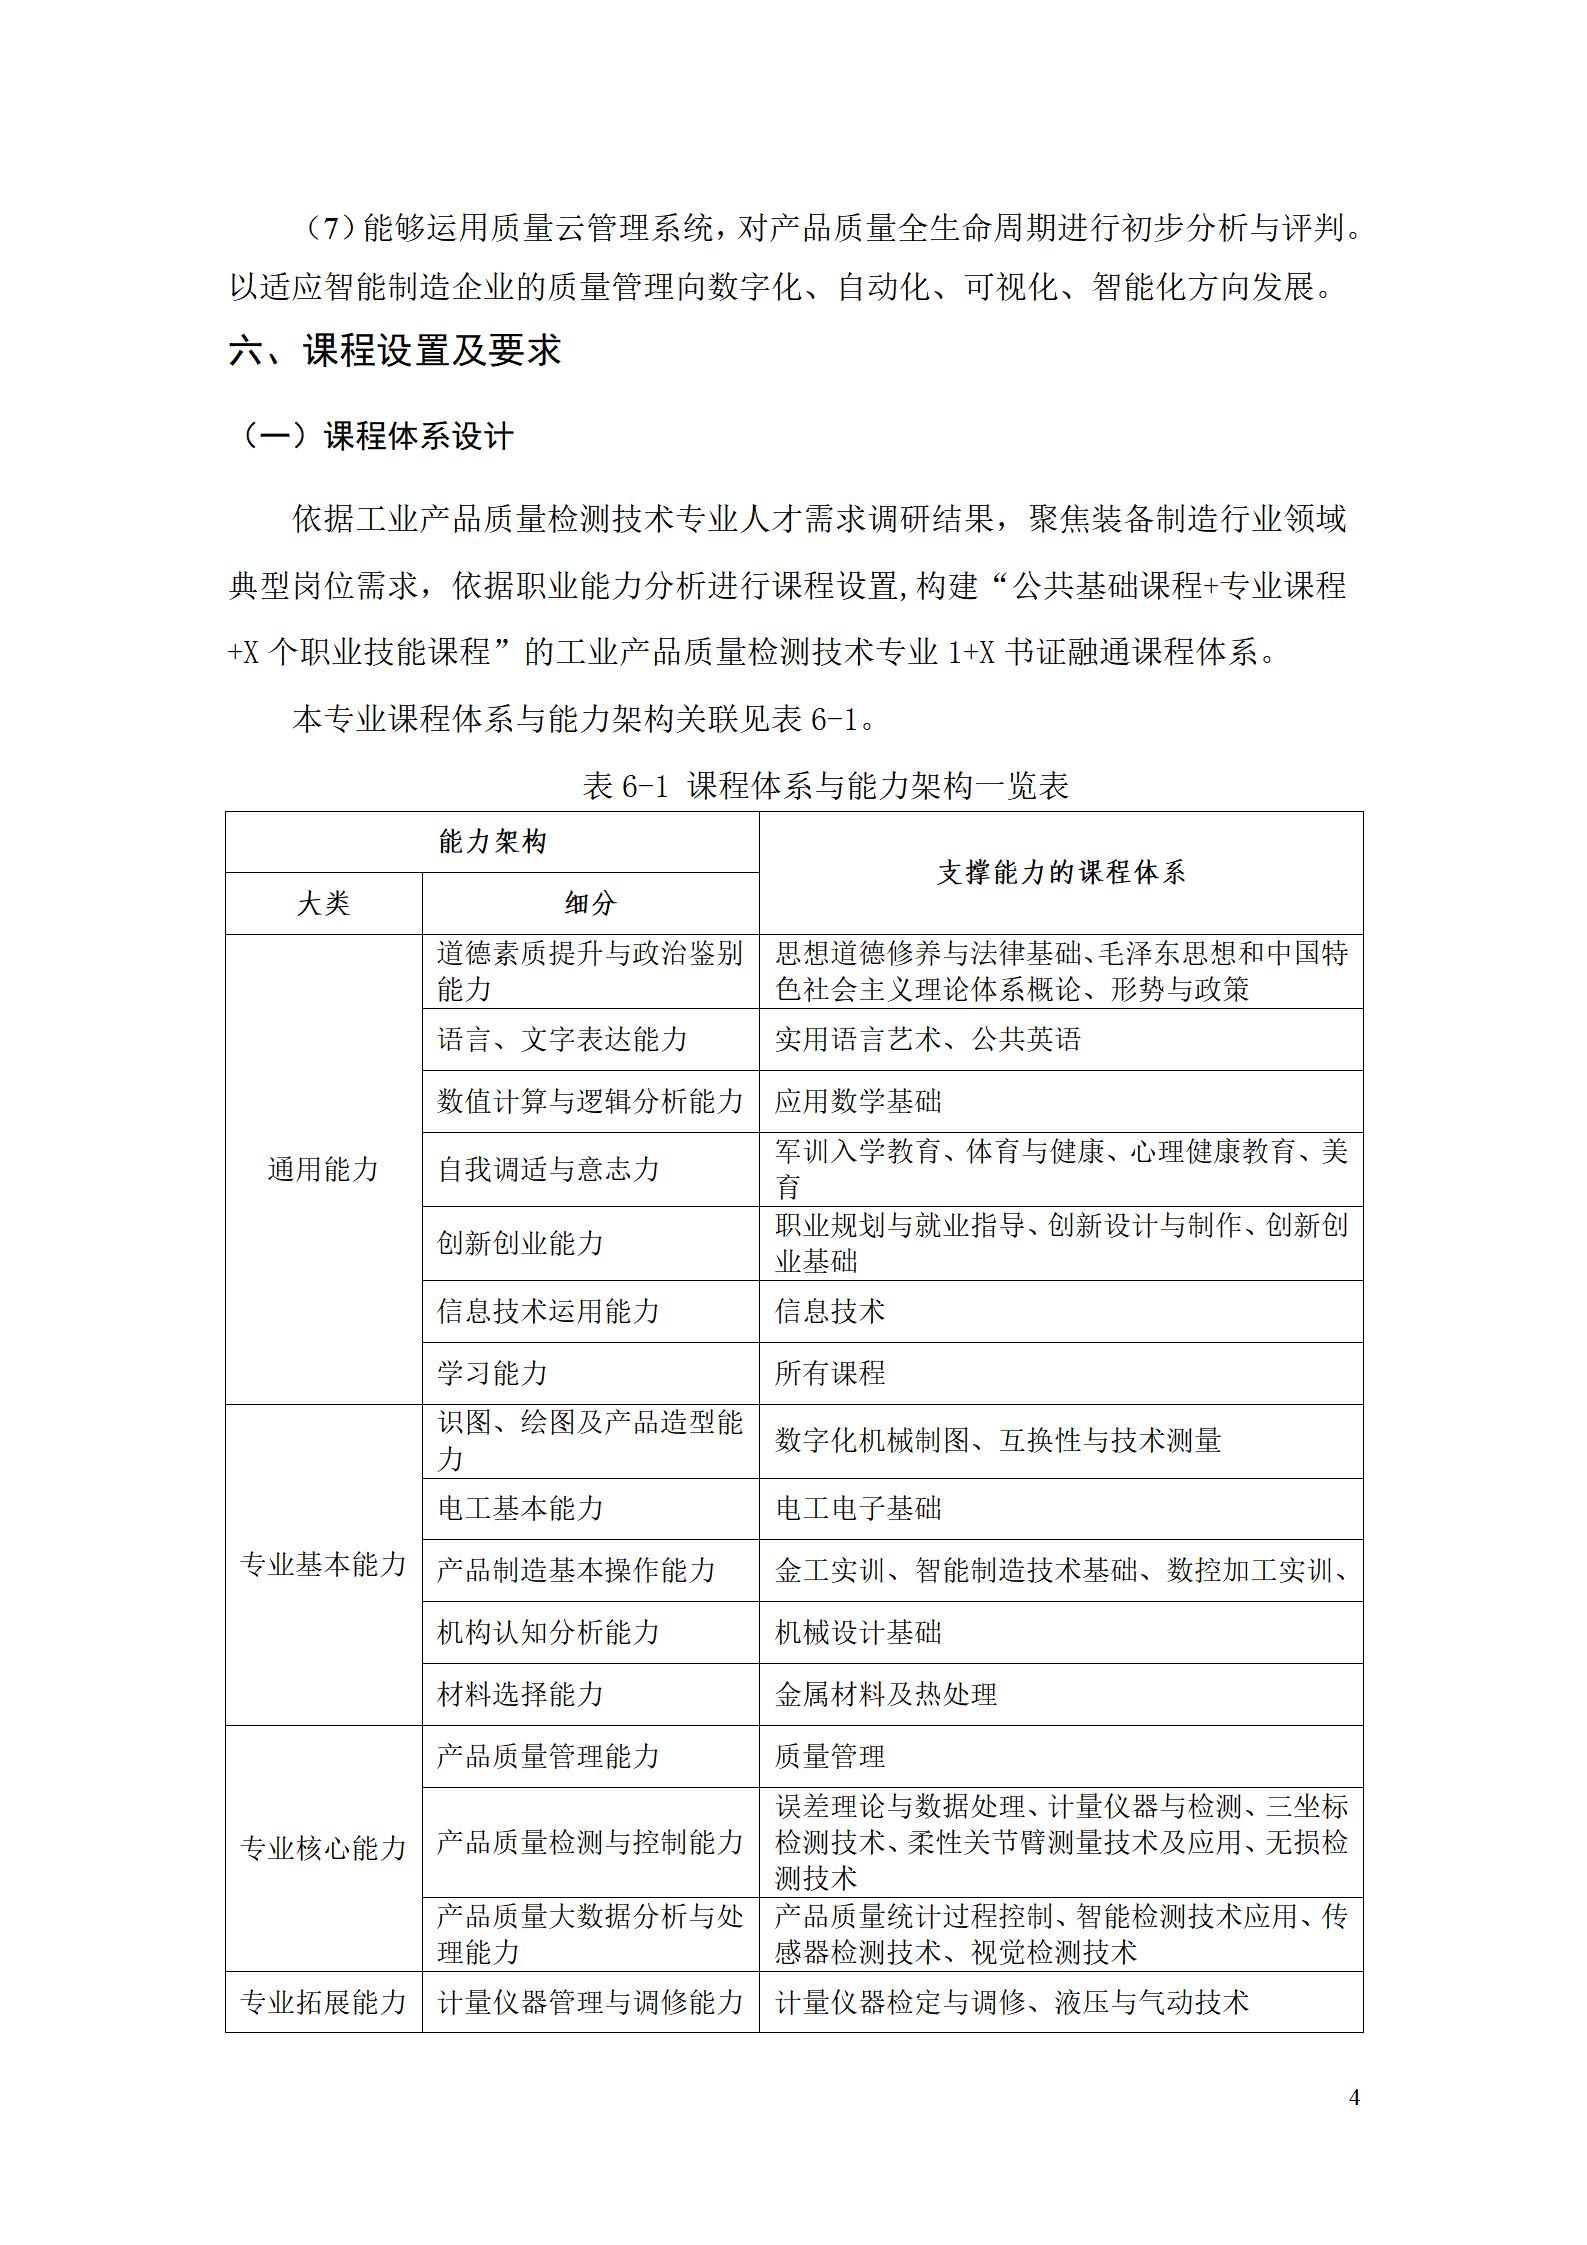 湖南机电职院2022级工业产品质量检测技术专业人才培养方案9.5_06.jpg